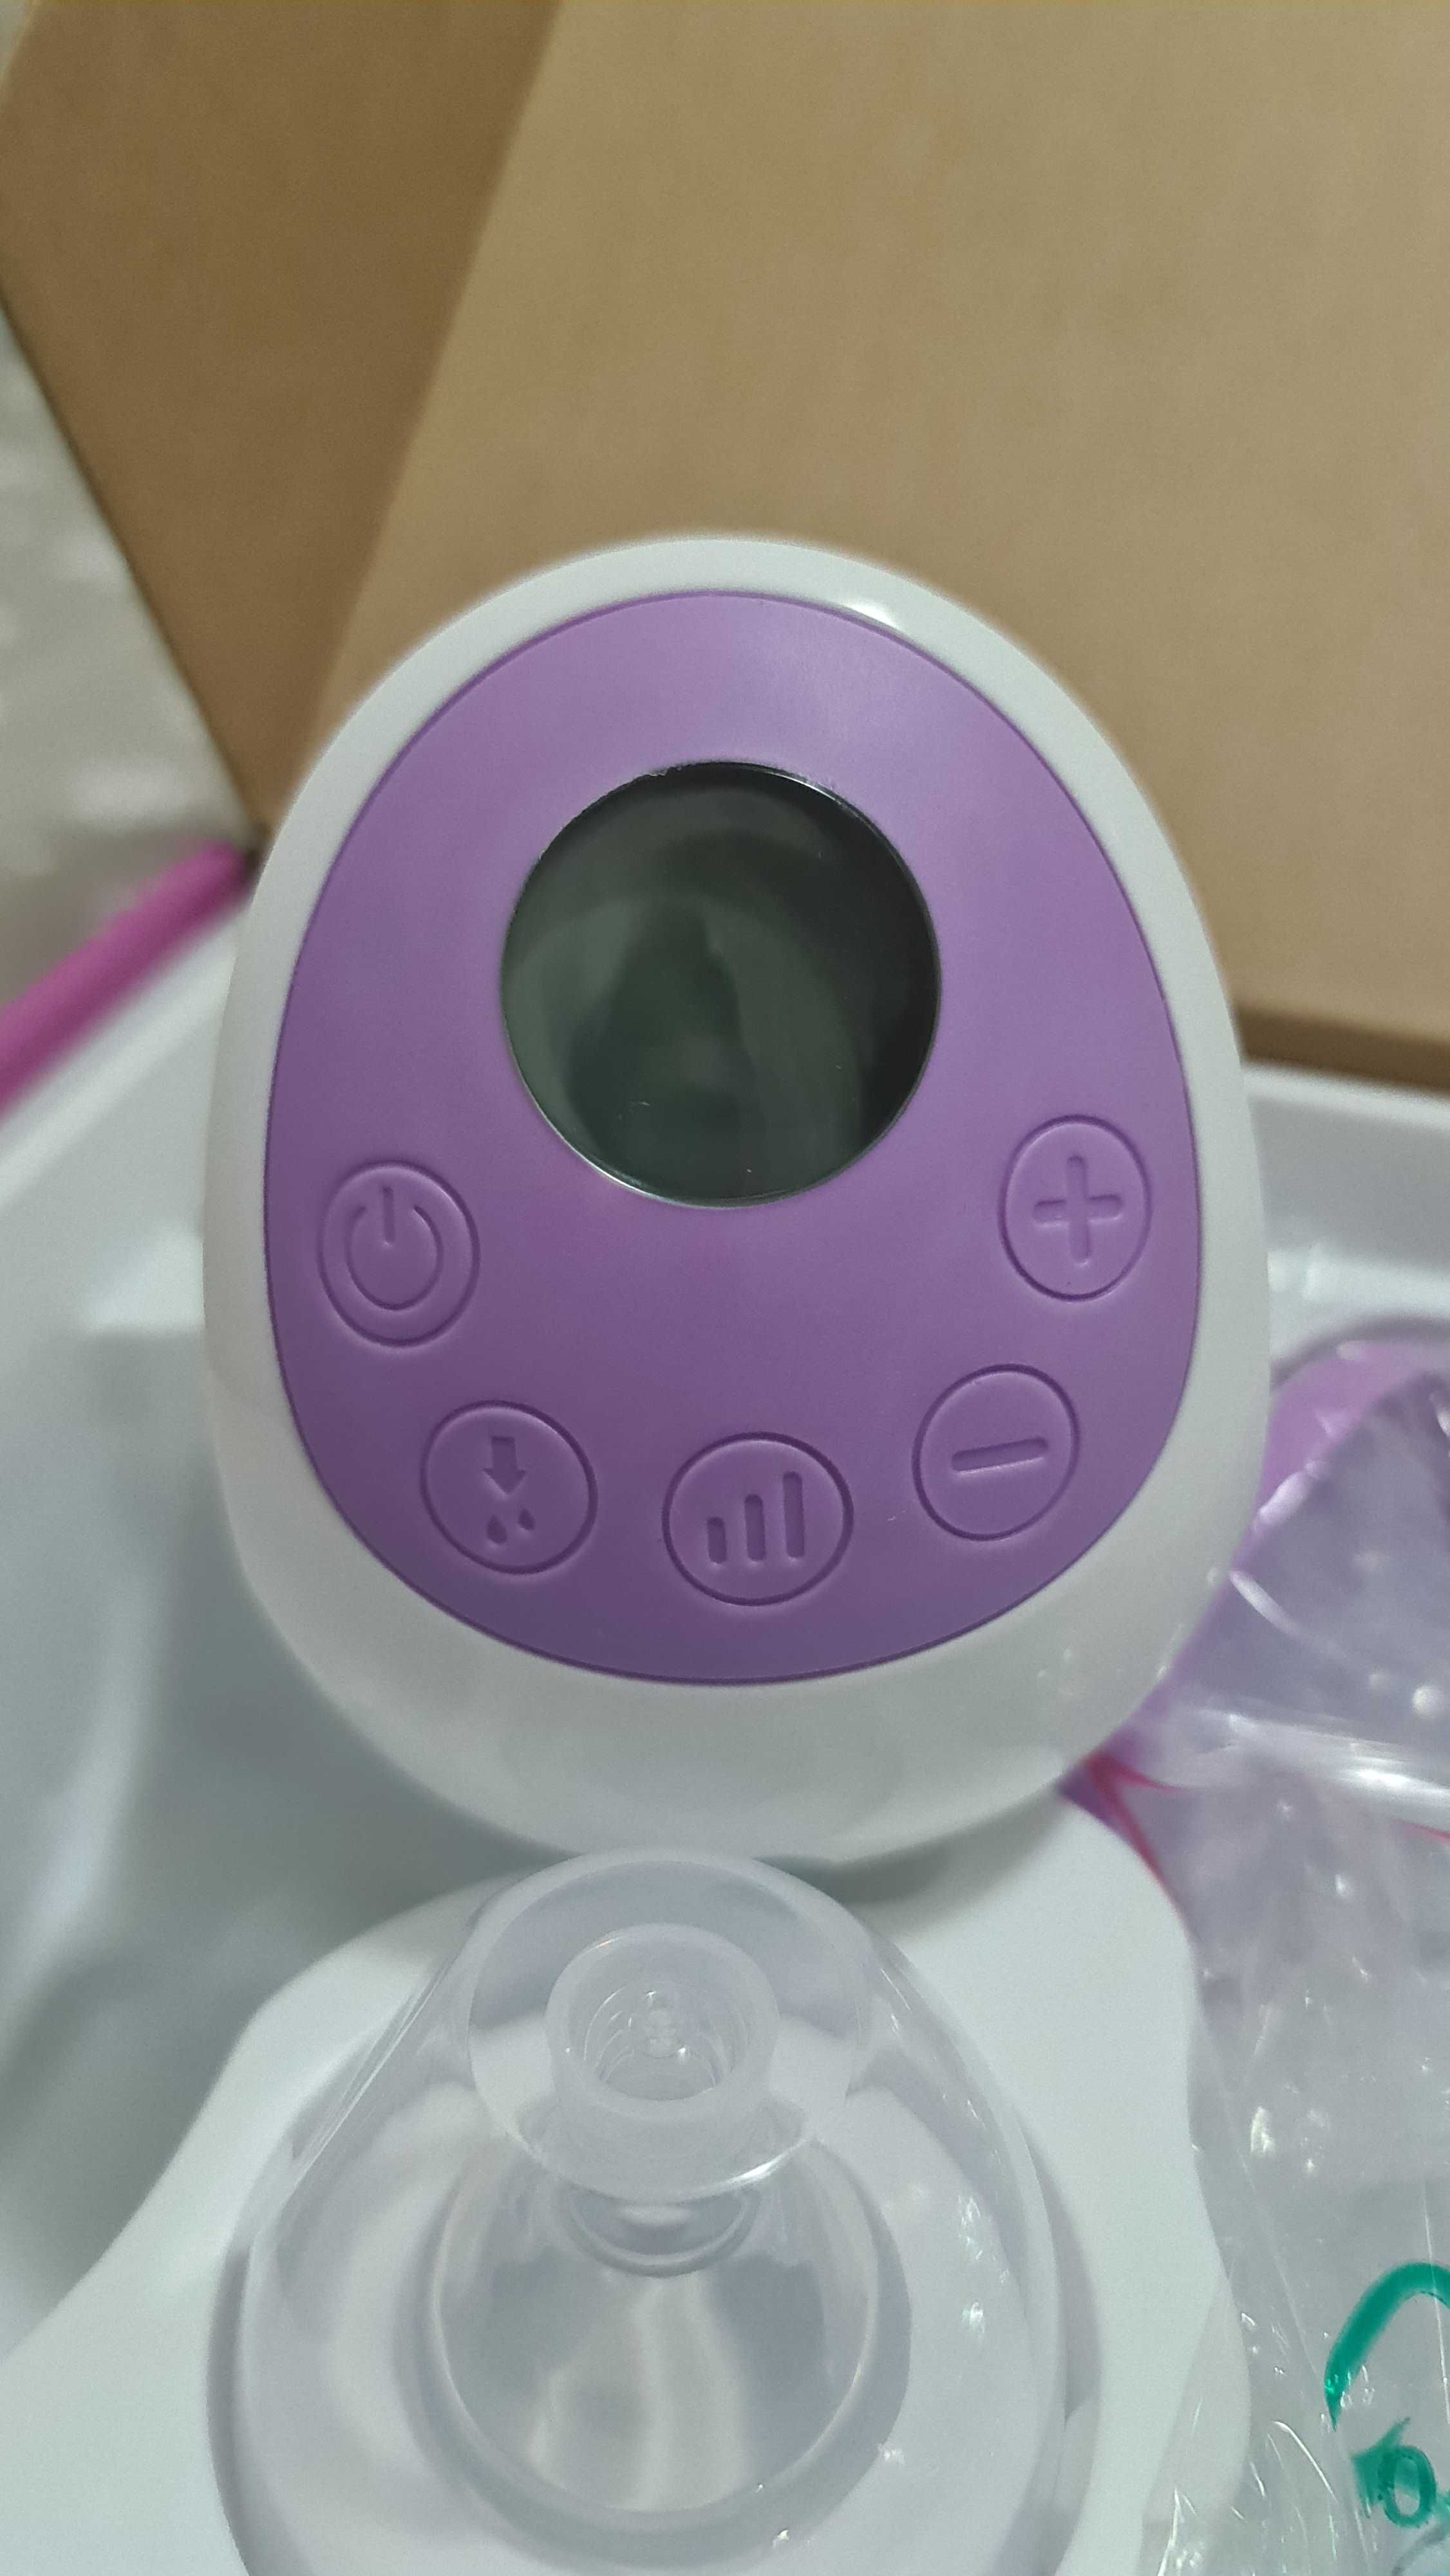 Pompă electrică pentru sâni Kids Care